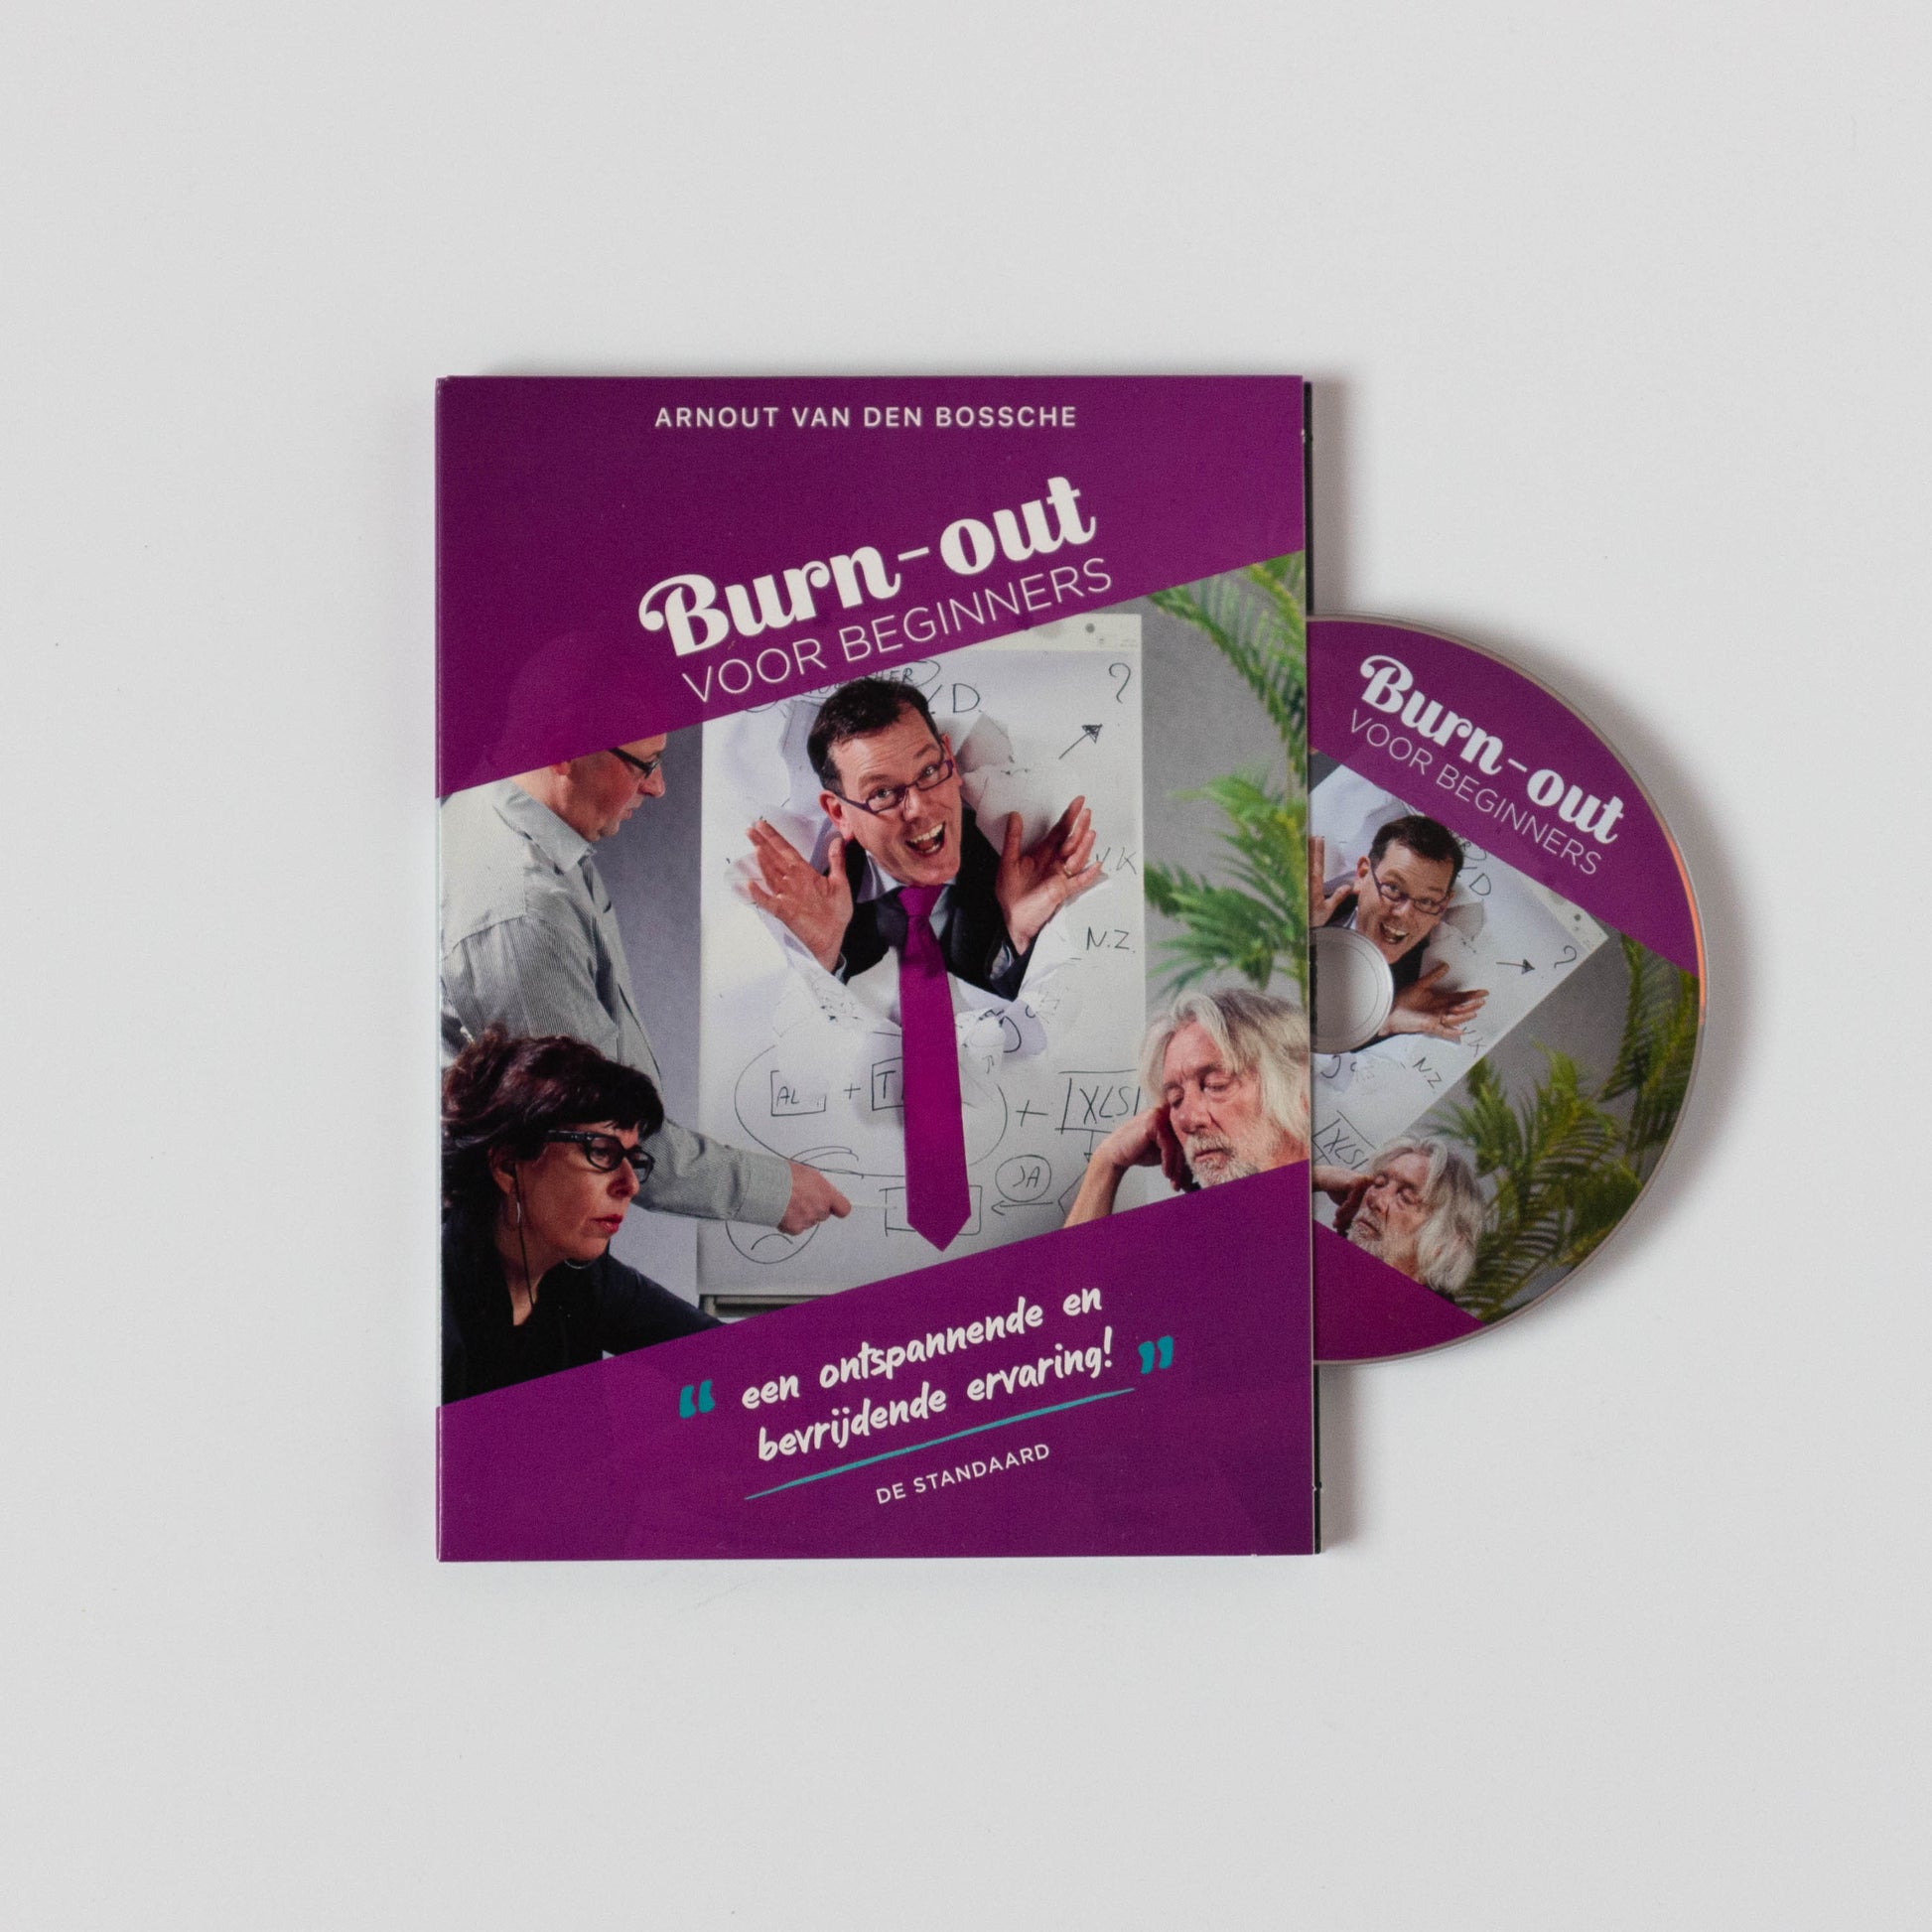 Arnout Van den Bossche - "Burn-out voor Beginners" (DVD)